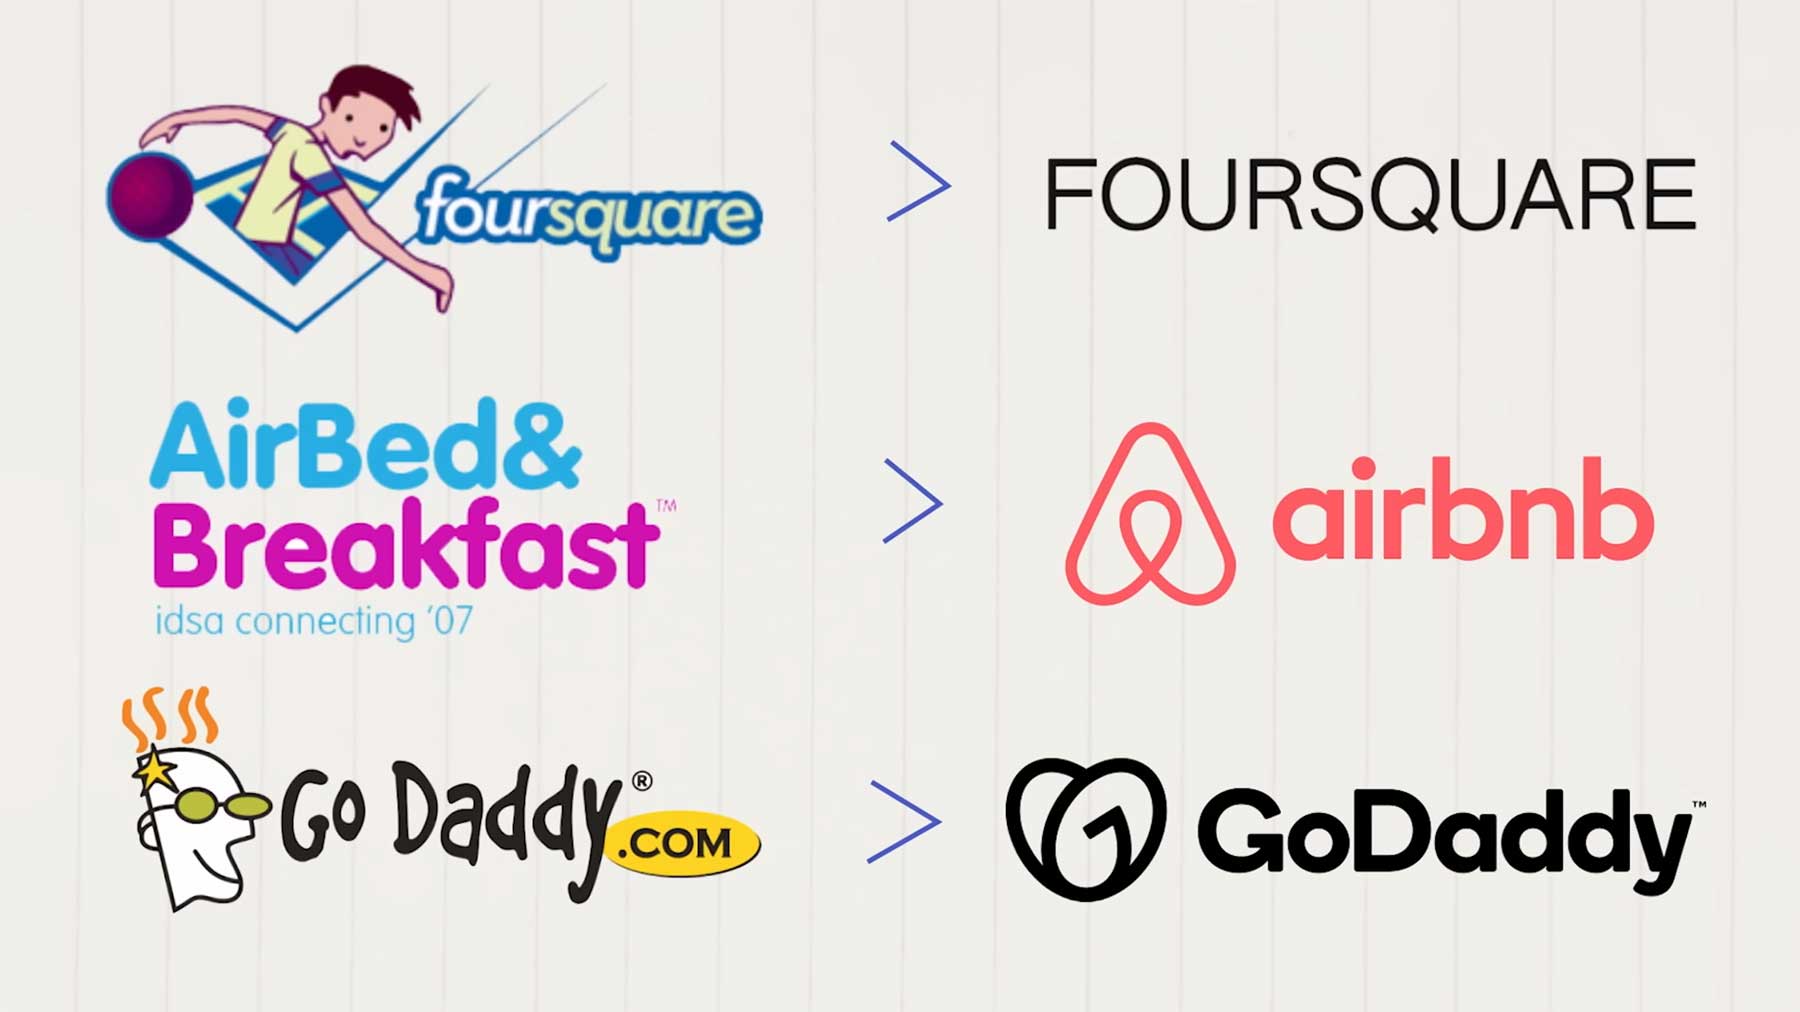 Wieso viele Marken ihre Logos minimalisiert haben